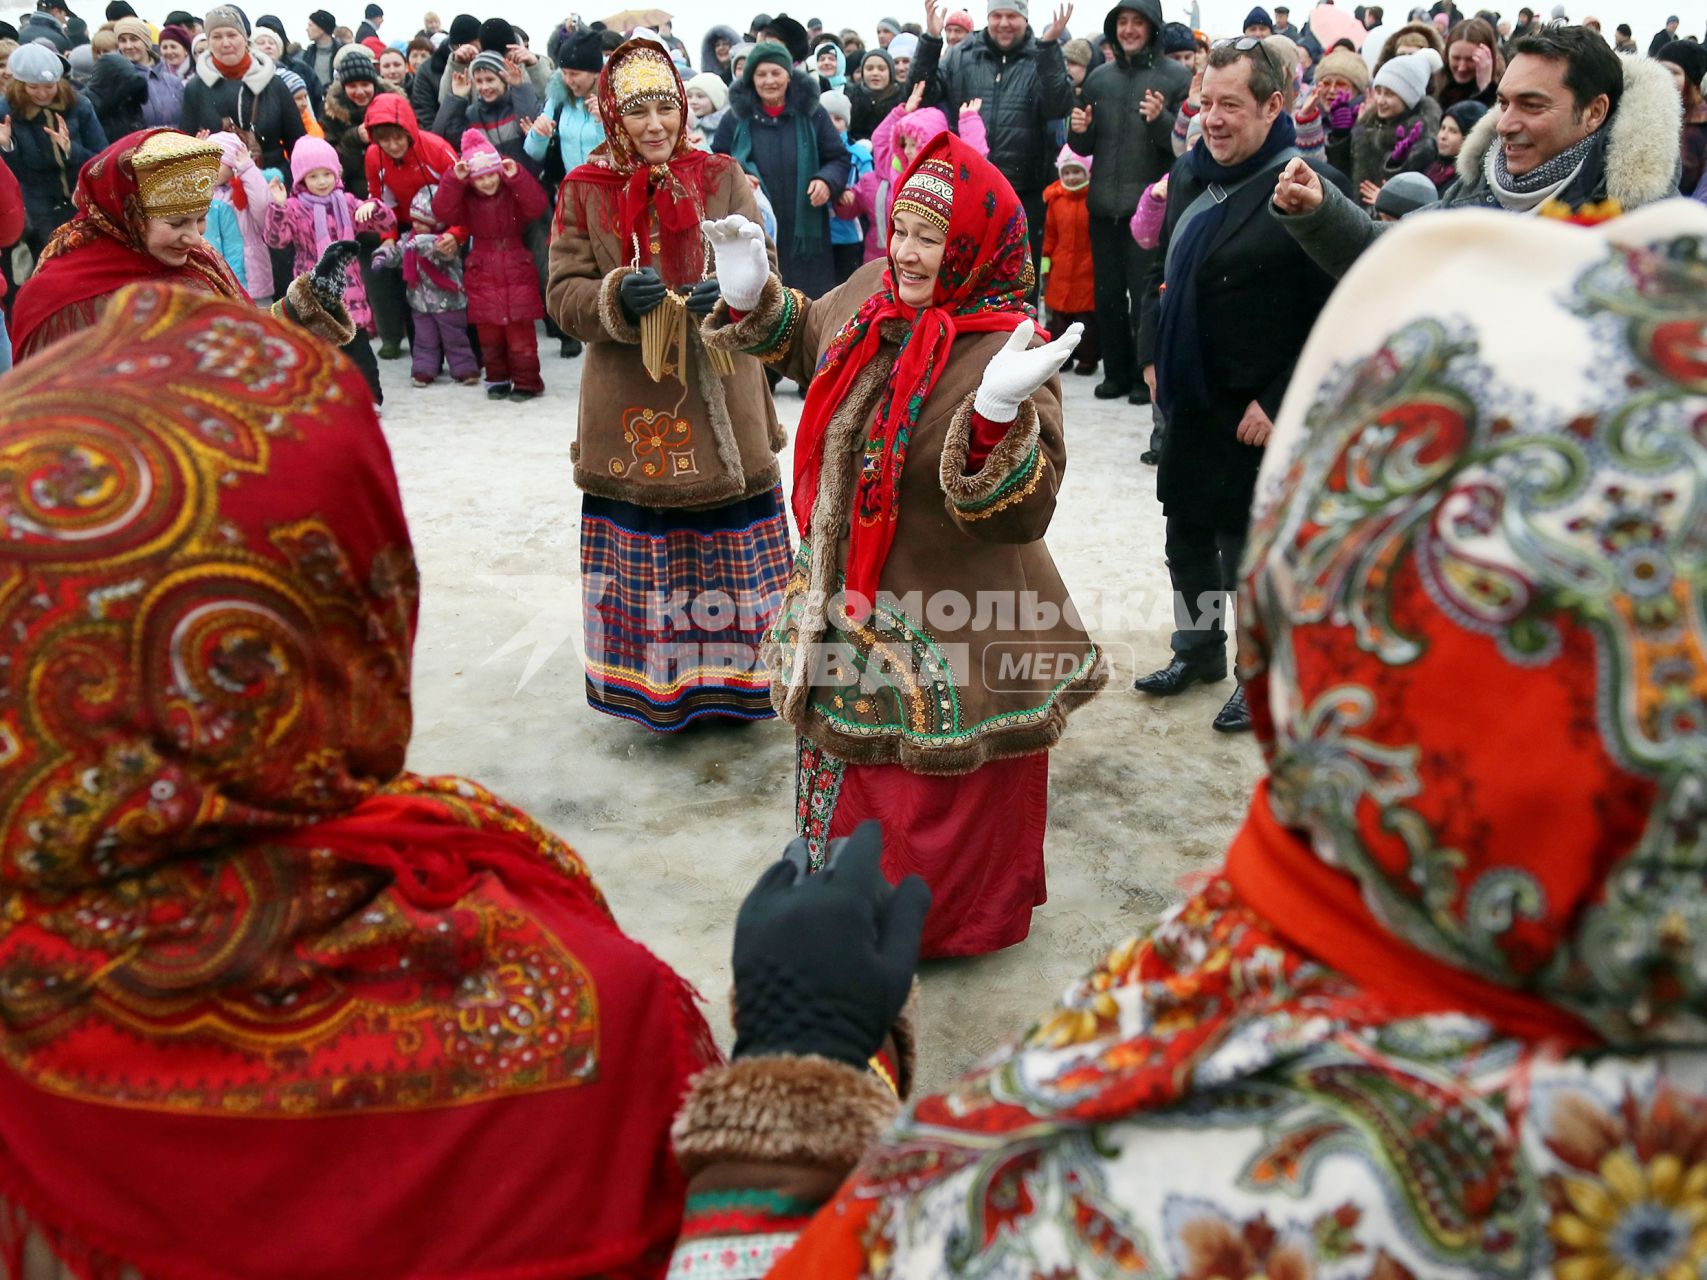 Гулянья на масленицу. Женщины в русских национальных костюмах танцуют.